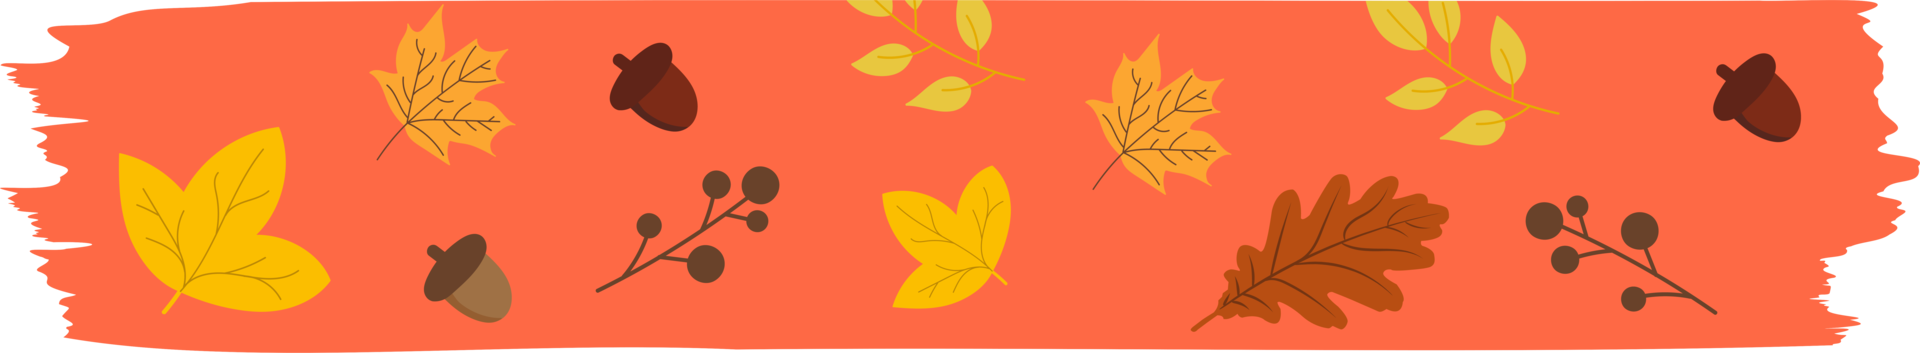 washi tape automne saisonnier avec des feuilles qui tombent, des symboles d'éléments floraux png